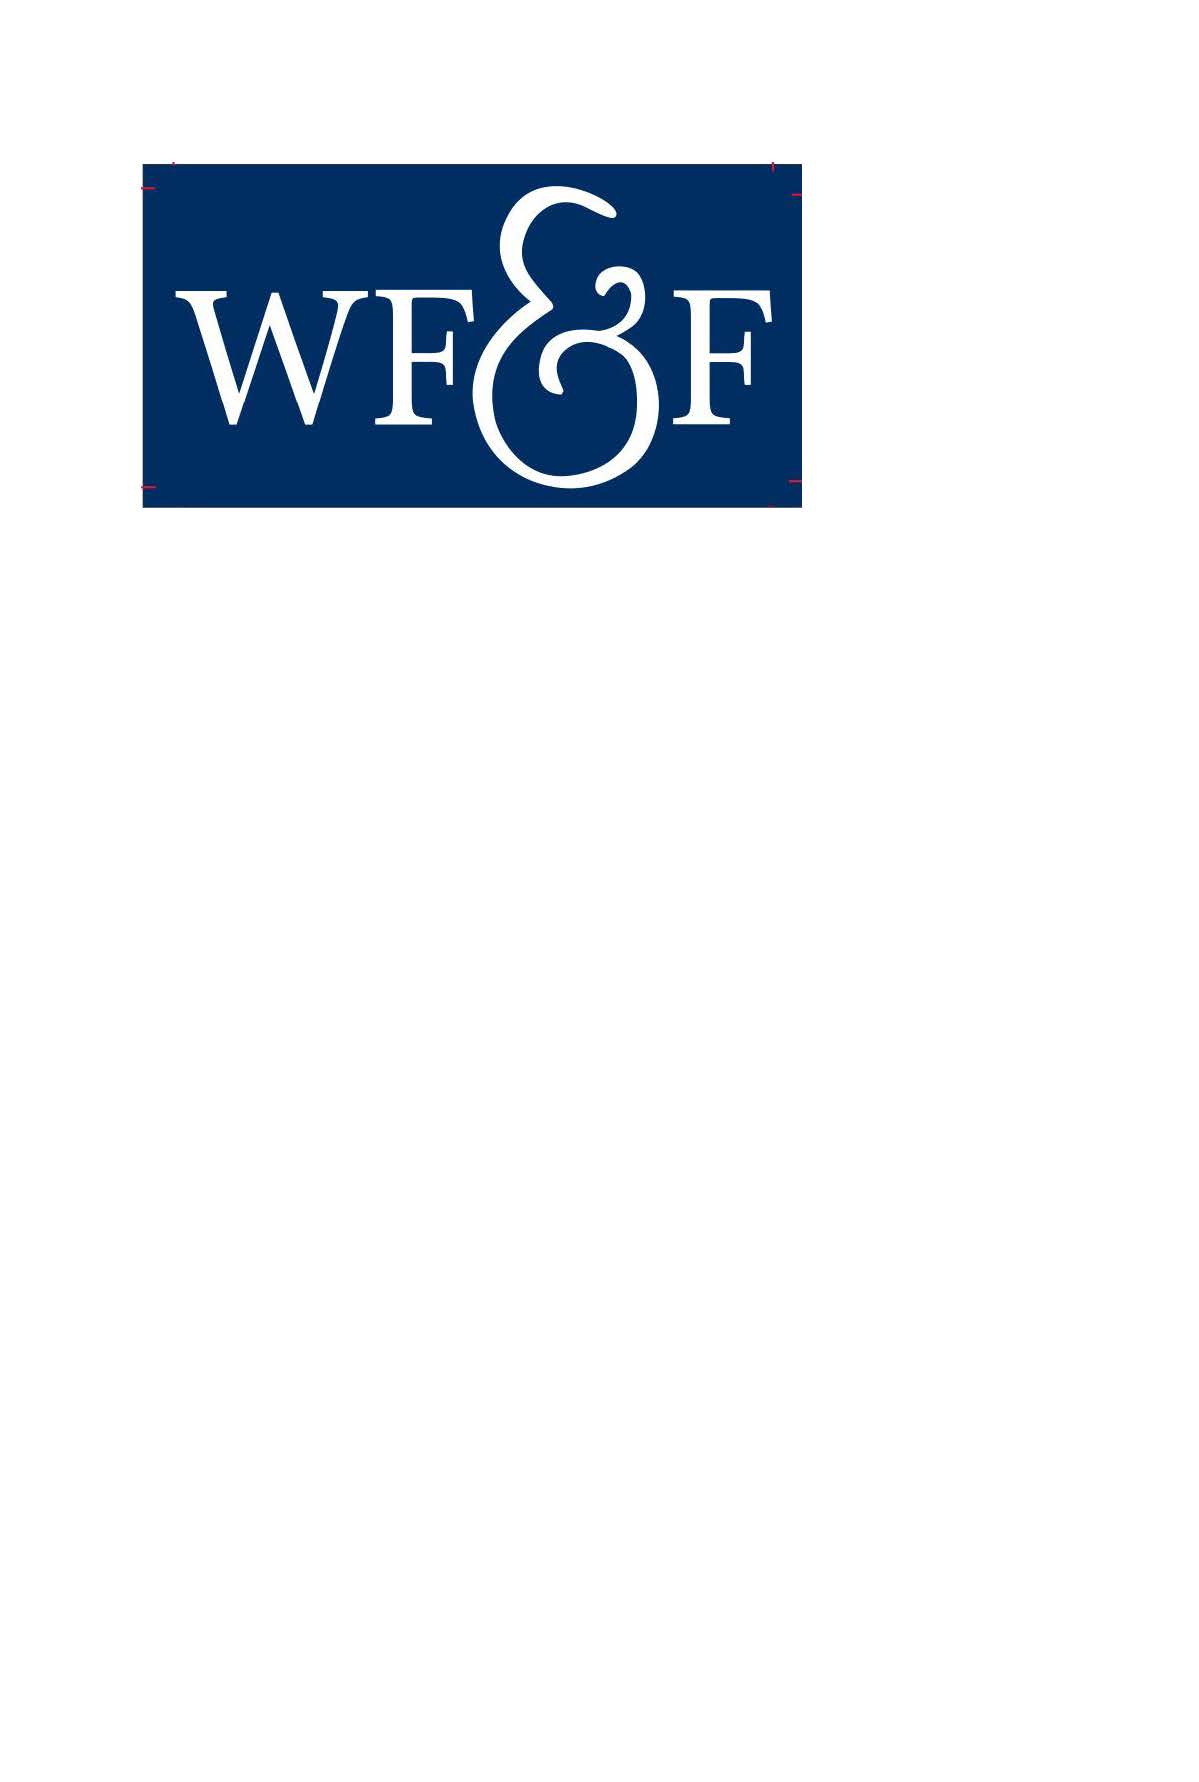 White, Fleischner & Fino, LLP logo